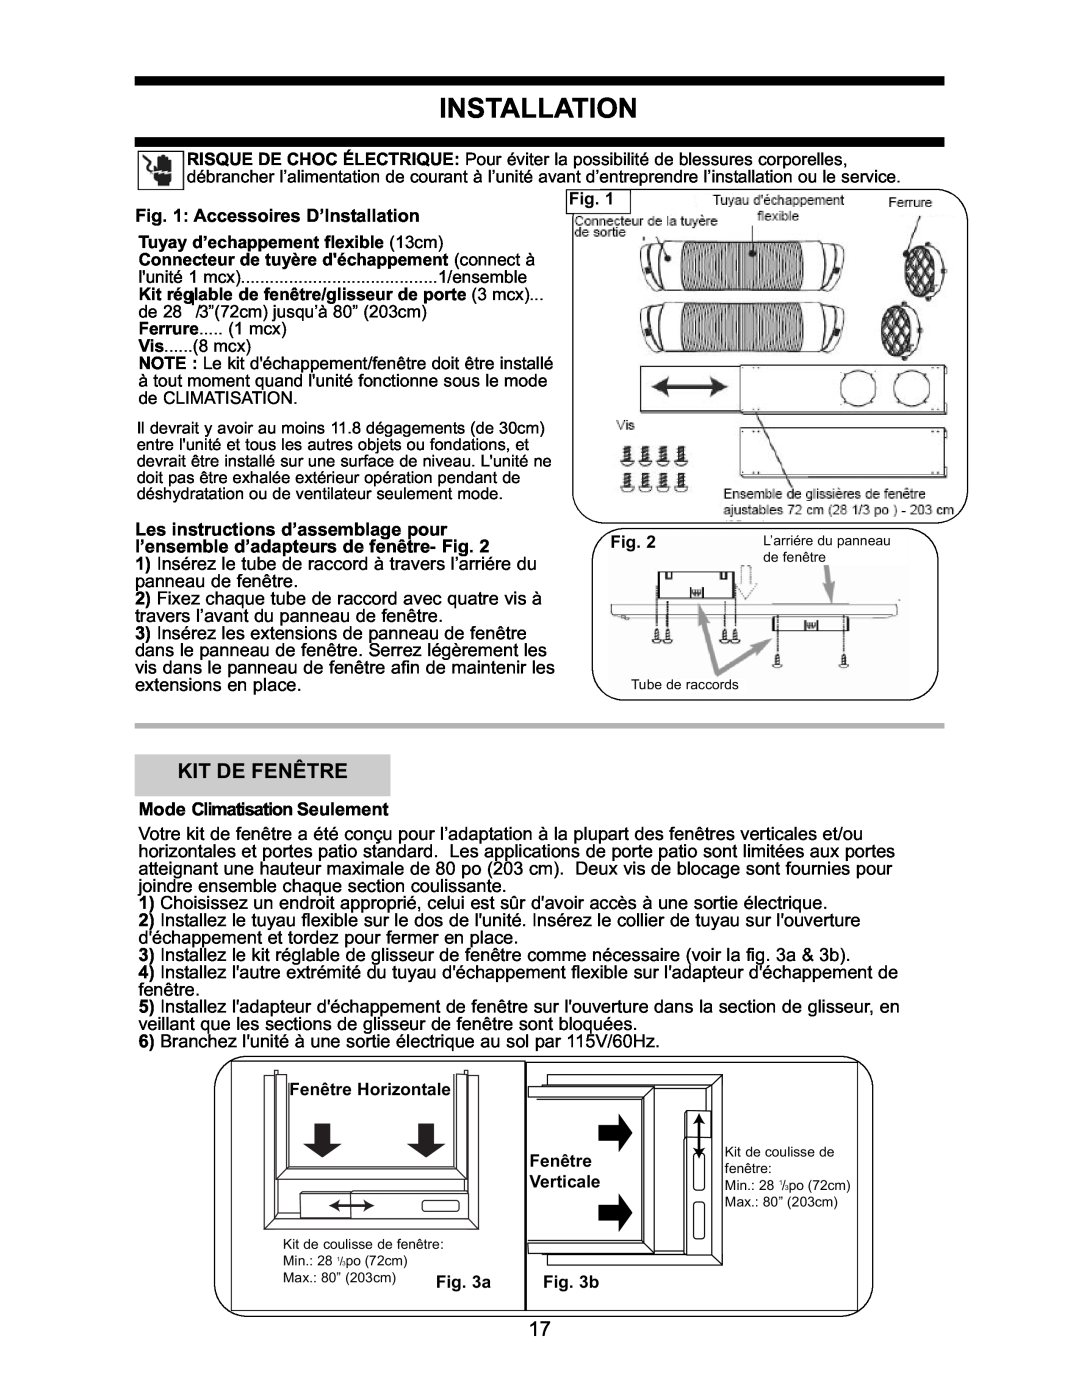 Danby DPAC7099 operating instructions Kit De Fenêtre, Accessoires D’Installation, Mode Climatisation Seulement 